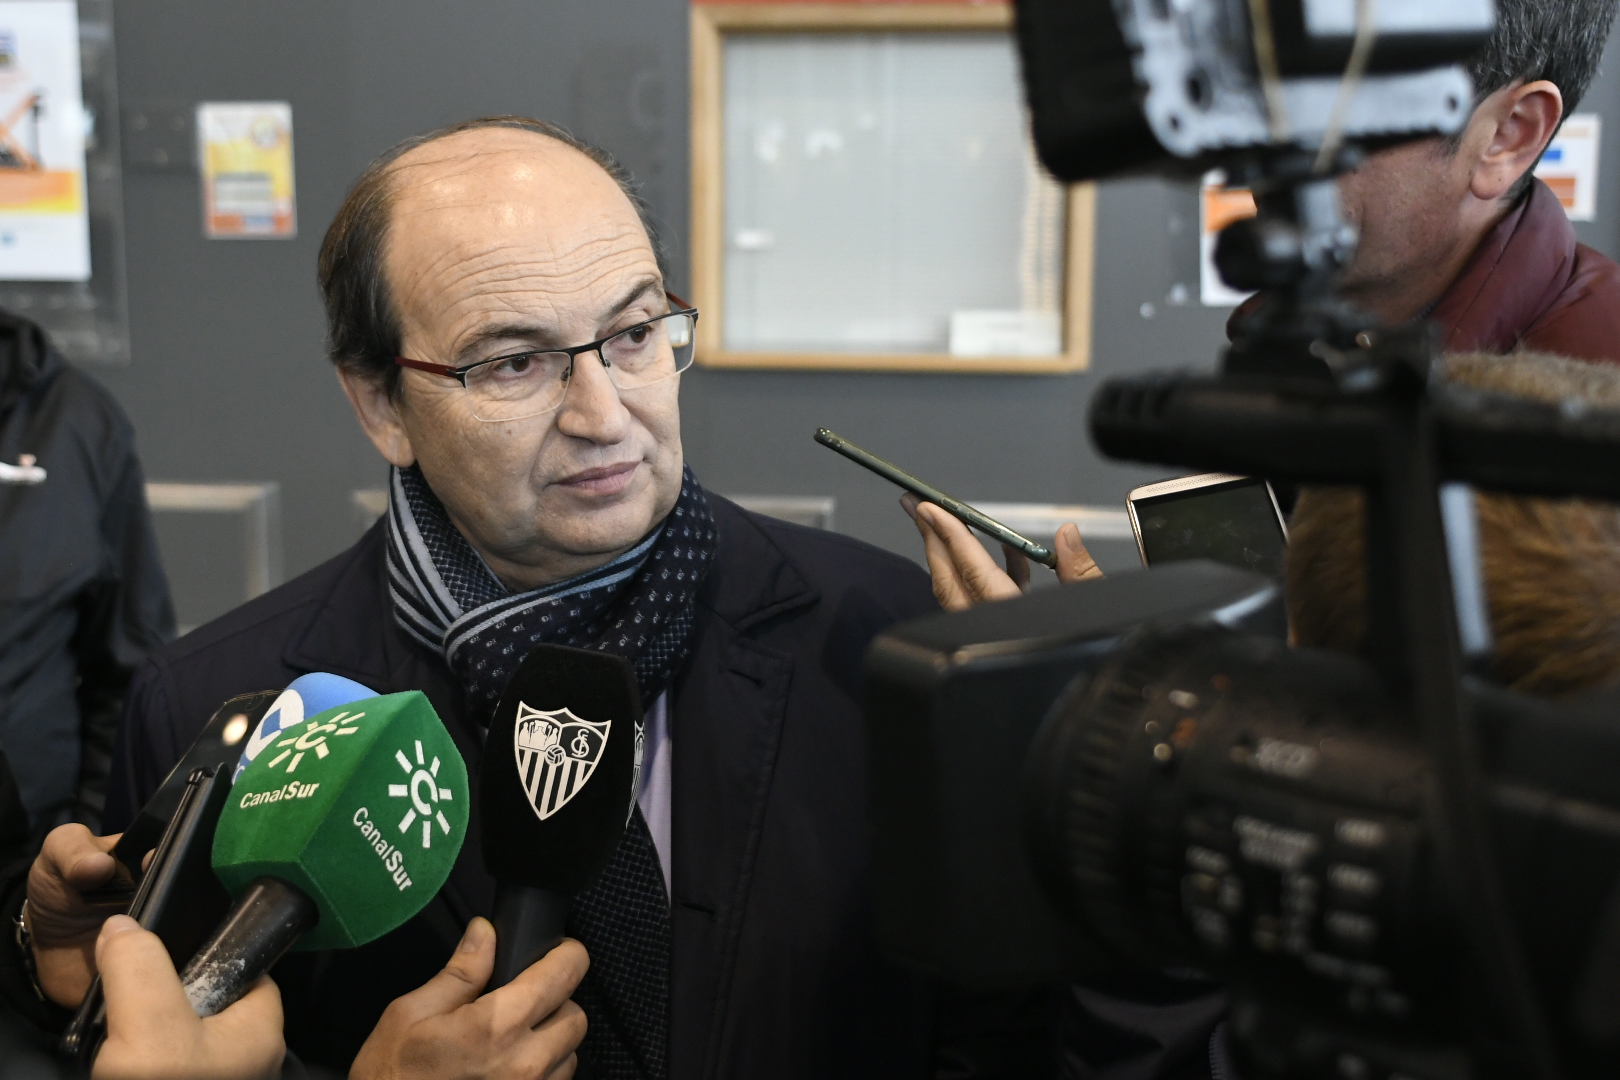 José Castro attends the media in Liège